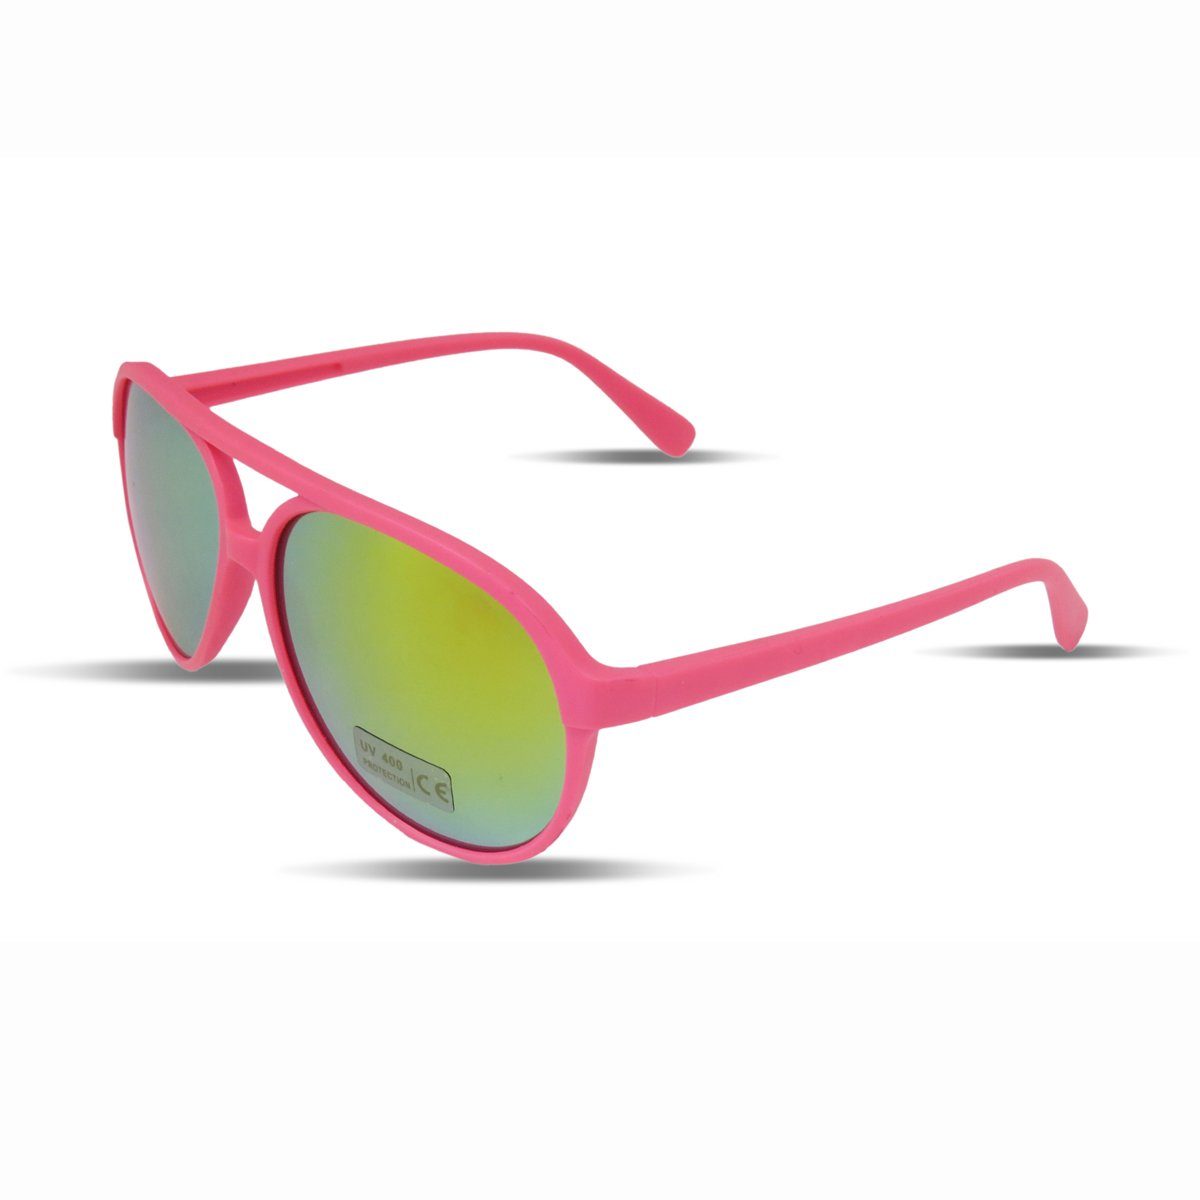 Fun Knallig Verspiegelt pink Gläser: Neon Sonia Verspiegelt Brille Onesize, Originelli Sonnenbrille Sonnenbrille